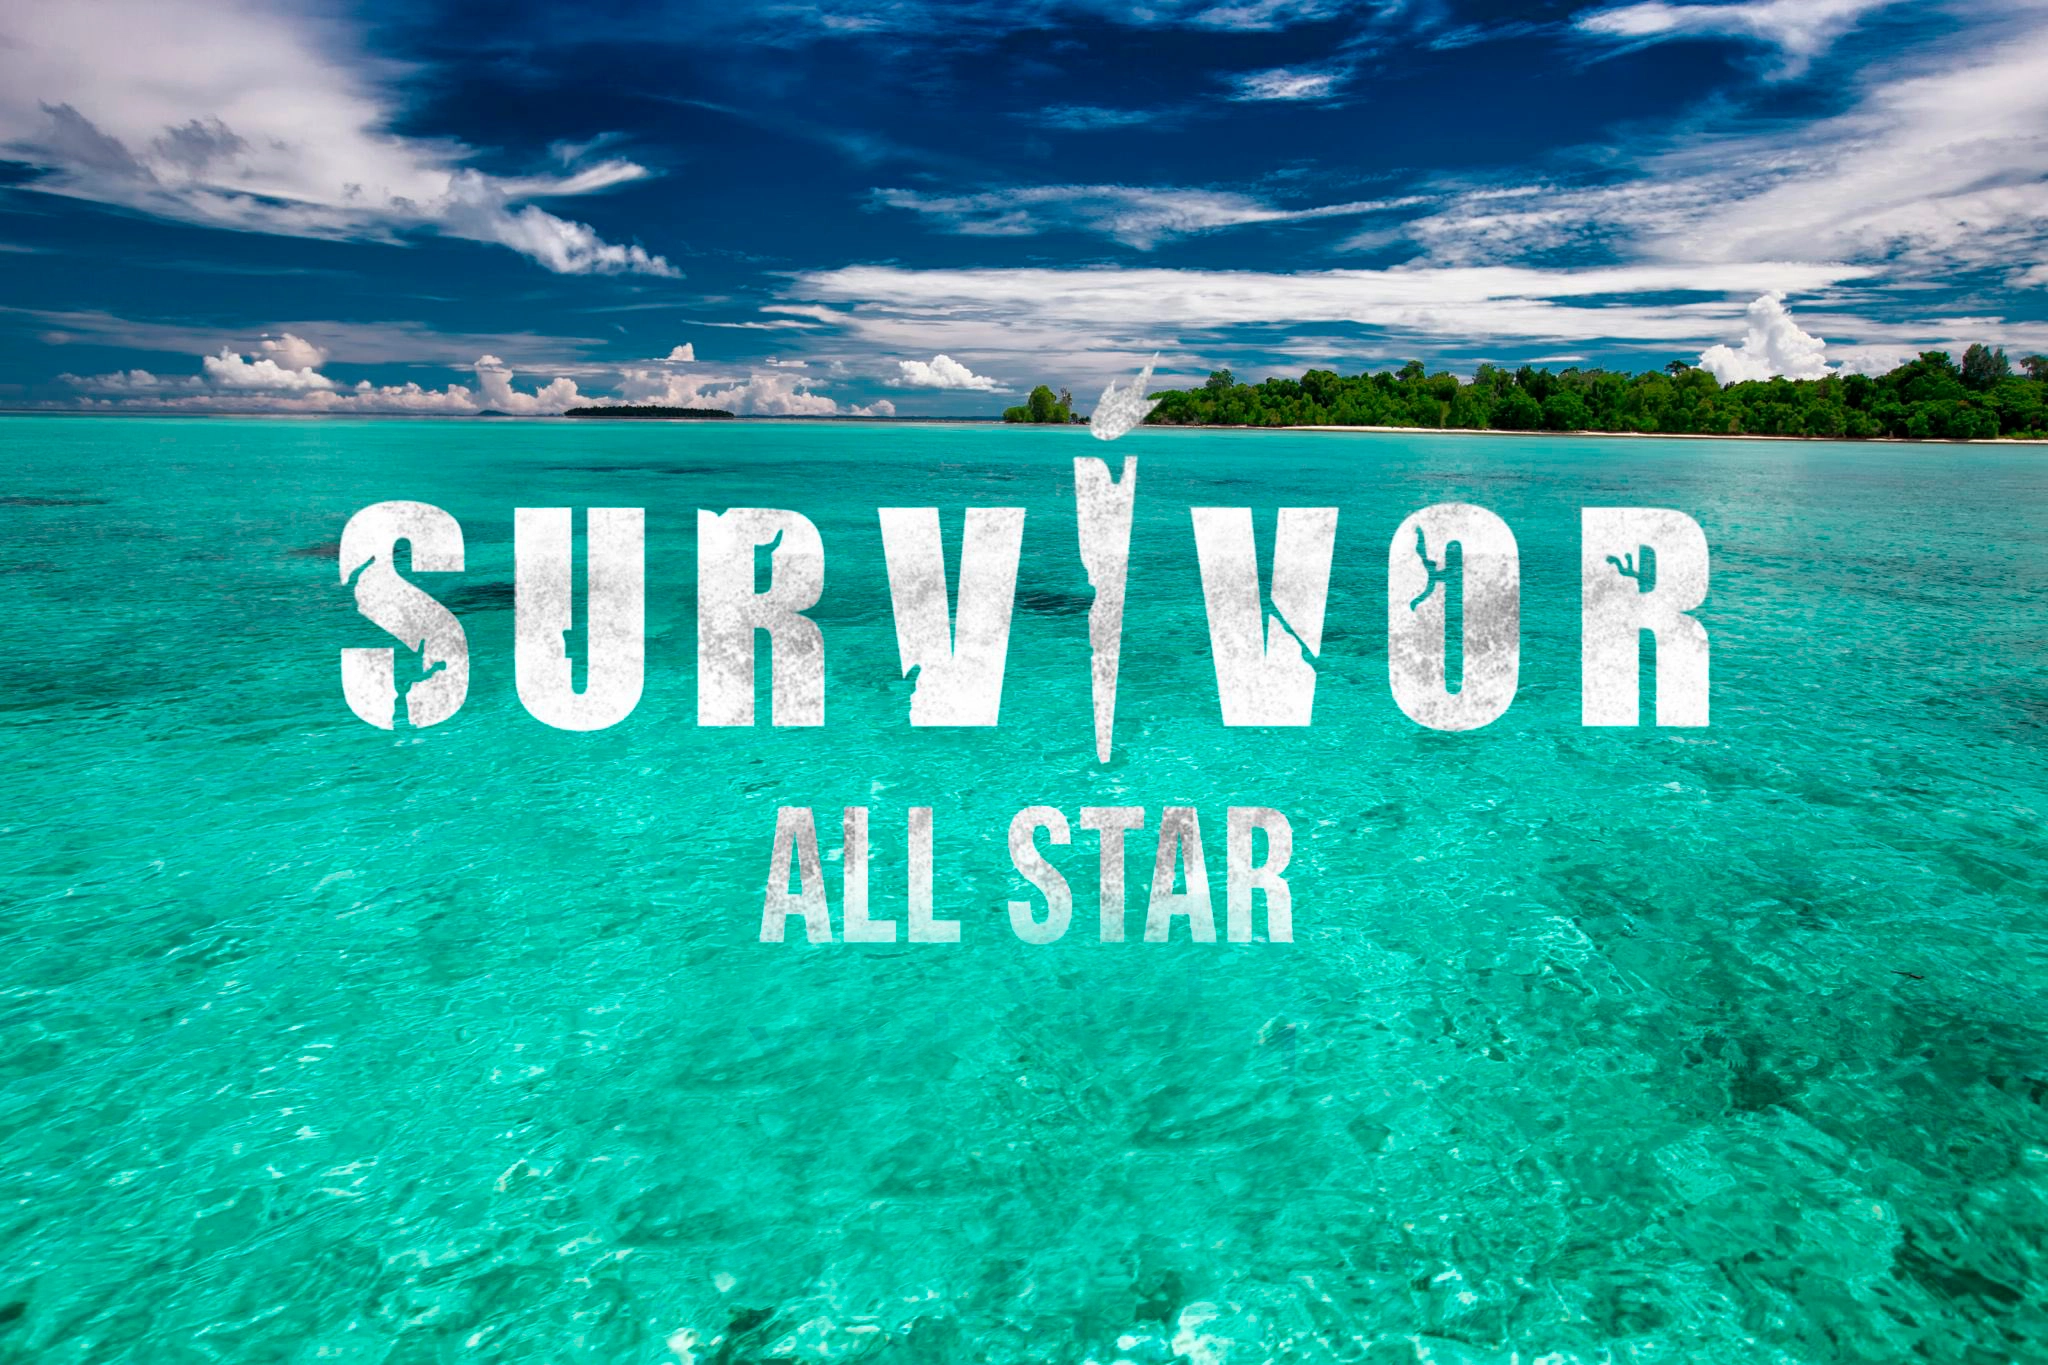 Survivor dokunulmazlık oyununu kim kazandı? 30 Ocak Survivor All Star'da dokunulmazlık oyununu kazanan hangi takım oldu?